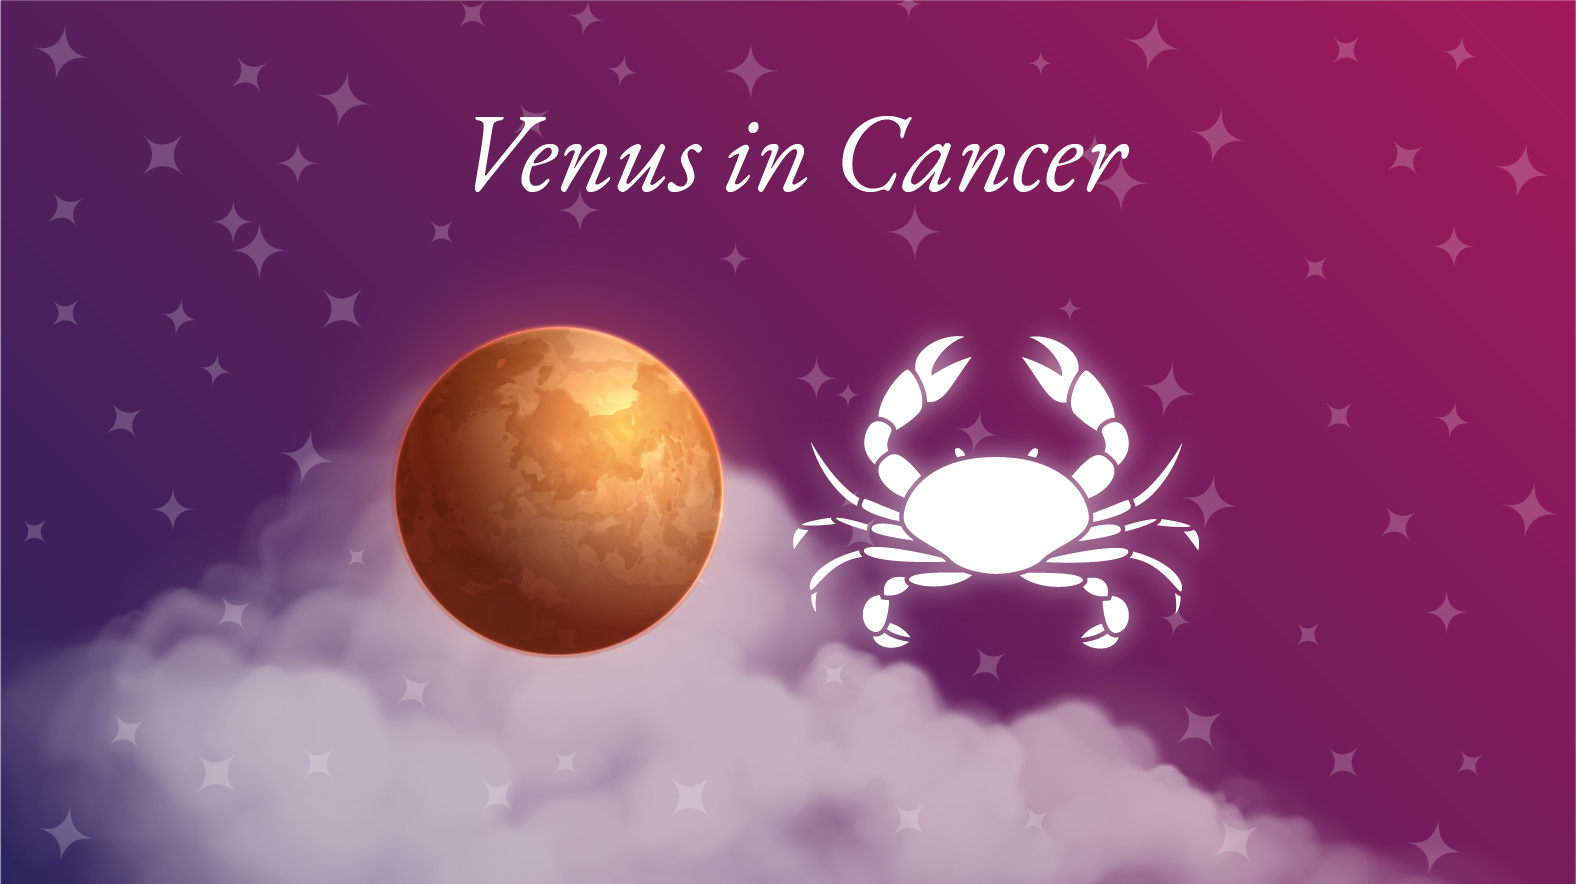 Venus in Cancer